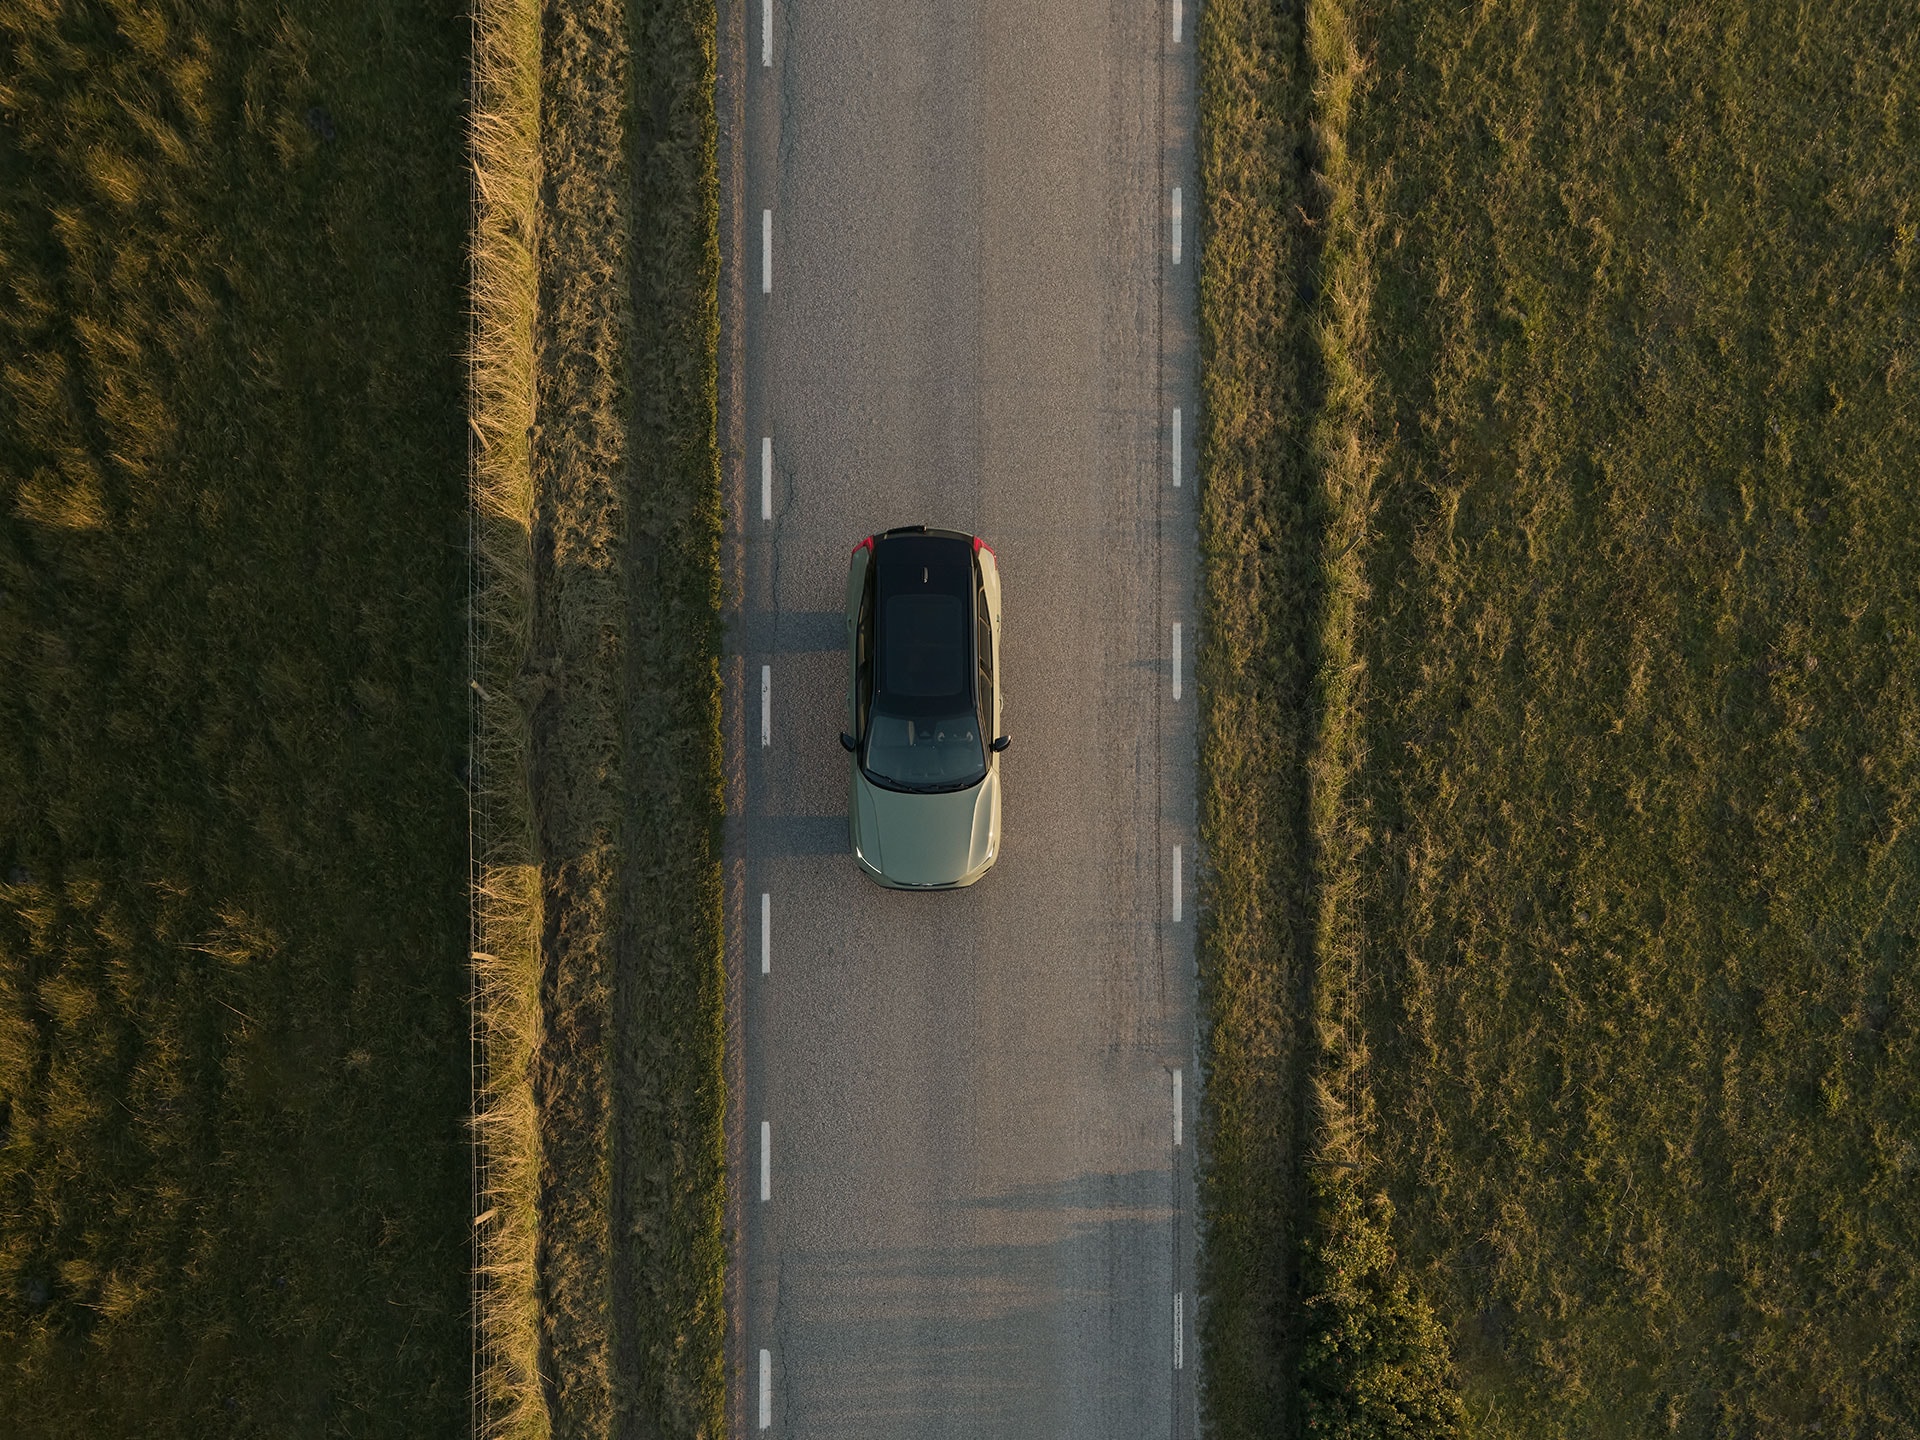 Elektrický vůz Volvo jedoucí po venkovské silnici.